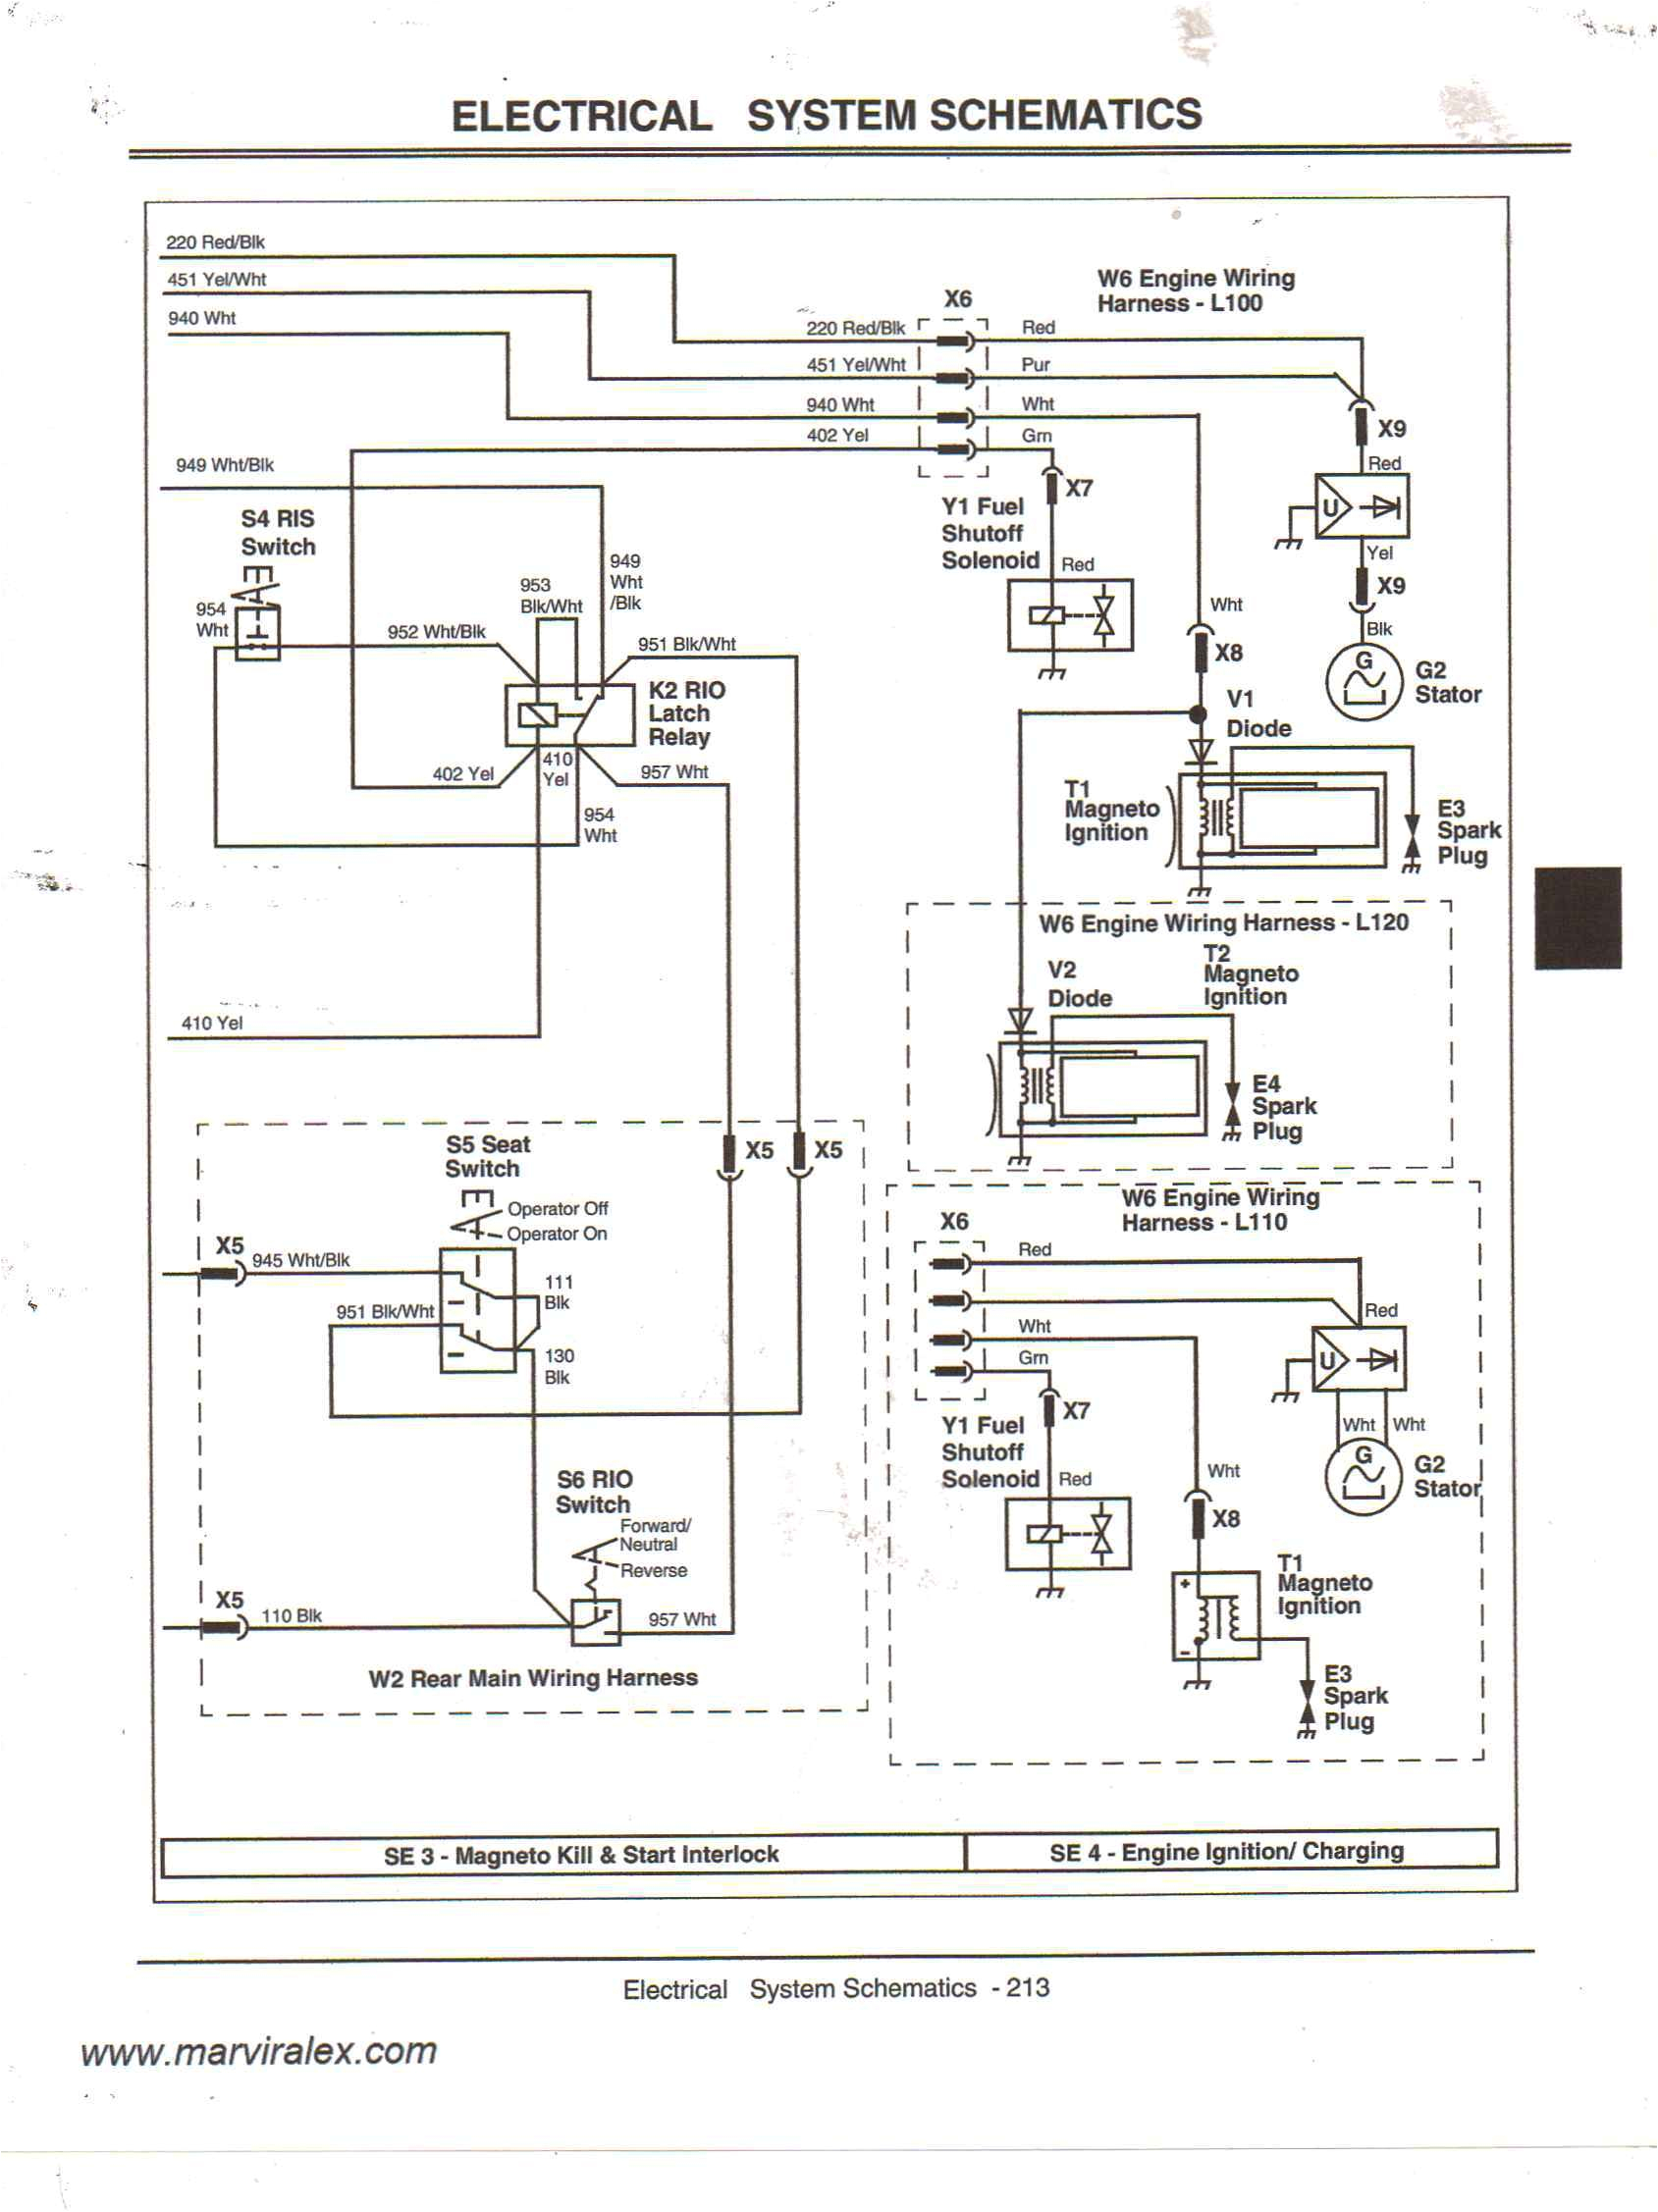 john deere 4040 wiring diagram free download blog wiring diagramjohn deere alternator wiring diagram free download